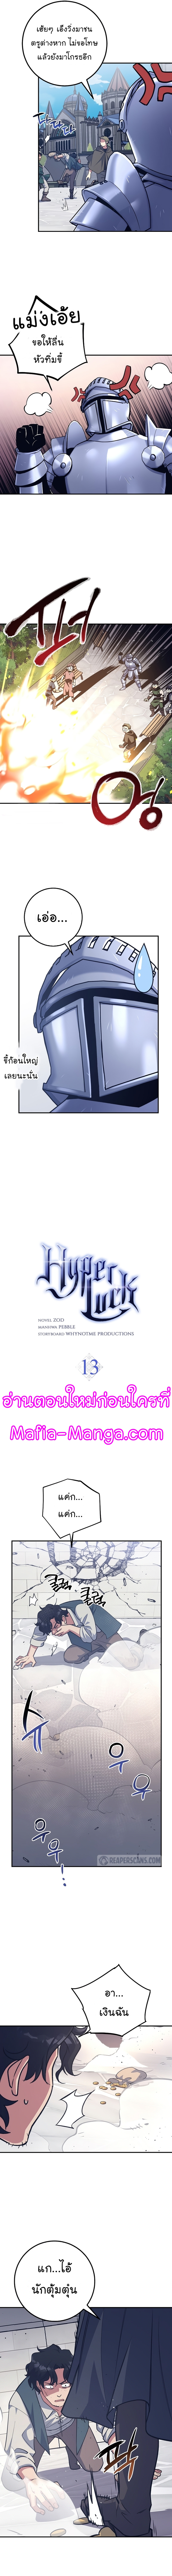 Hyper Luck 13 03